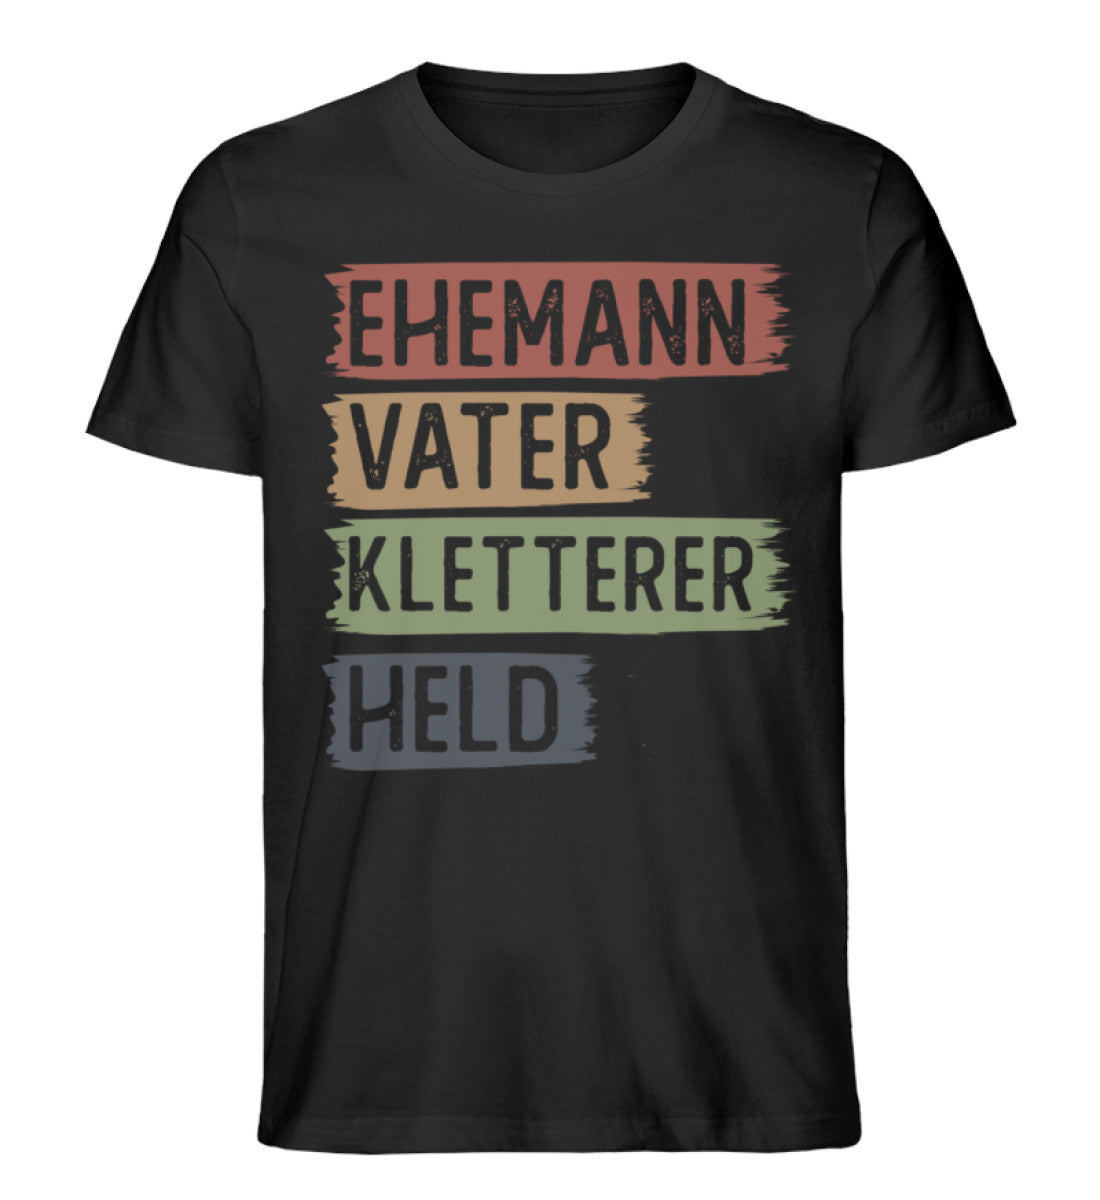 Ehemann, Vater, Kletterer, Held - Herren Organic T-Shirt klettern Schwarz